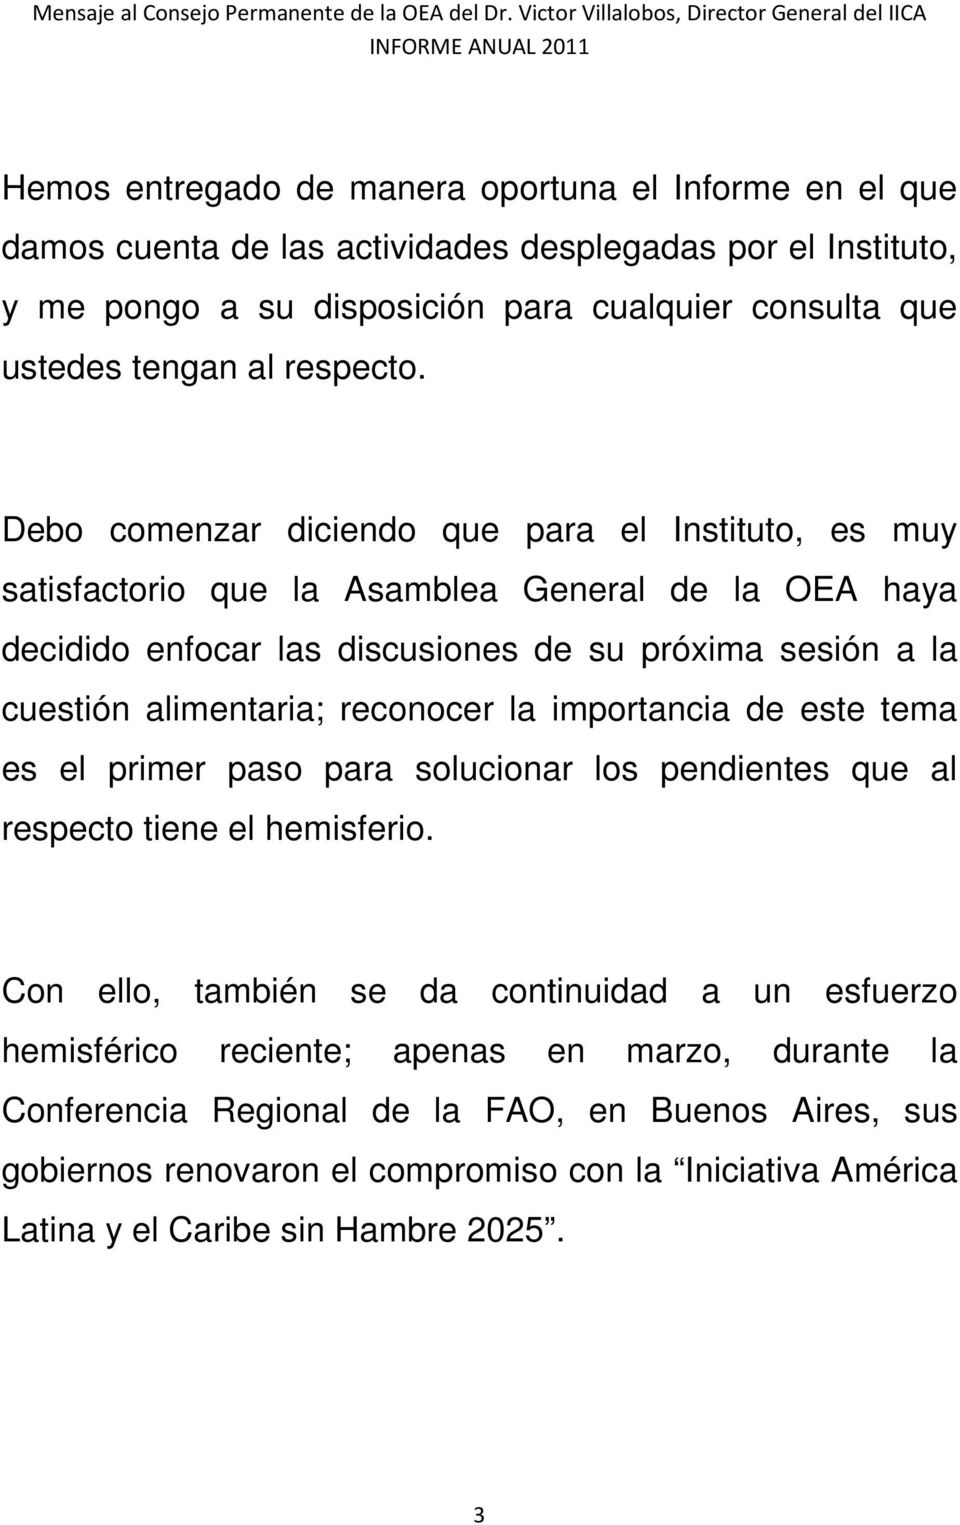 Debo comenzar diciendo que para el Instituto, es muy satisfactorio que la Asamblea General de la OEA haya decidido enfocar las discusiones de su próxima sesión a la cuestión alimentaria;